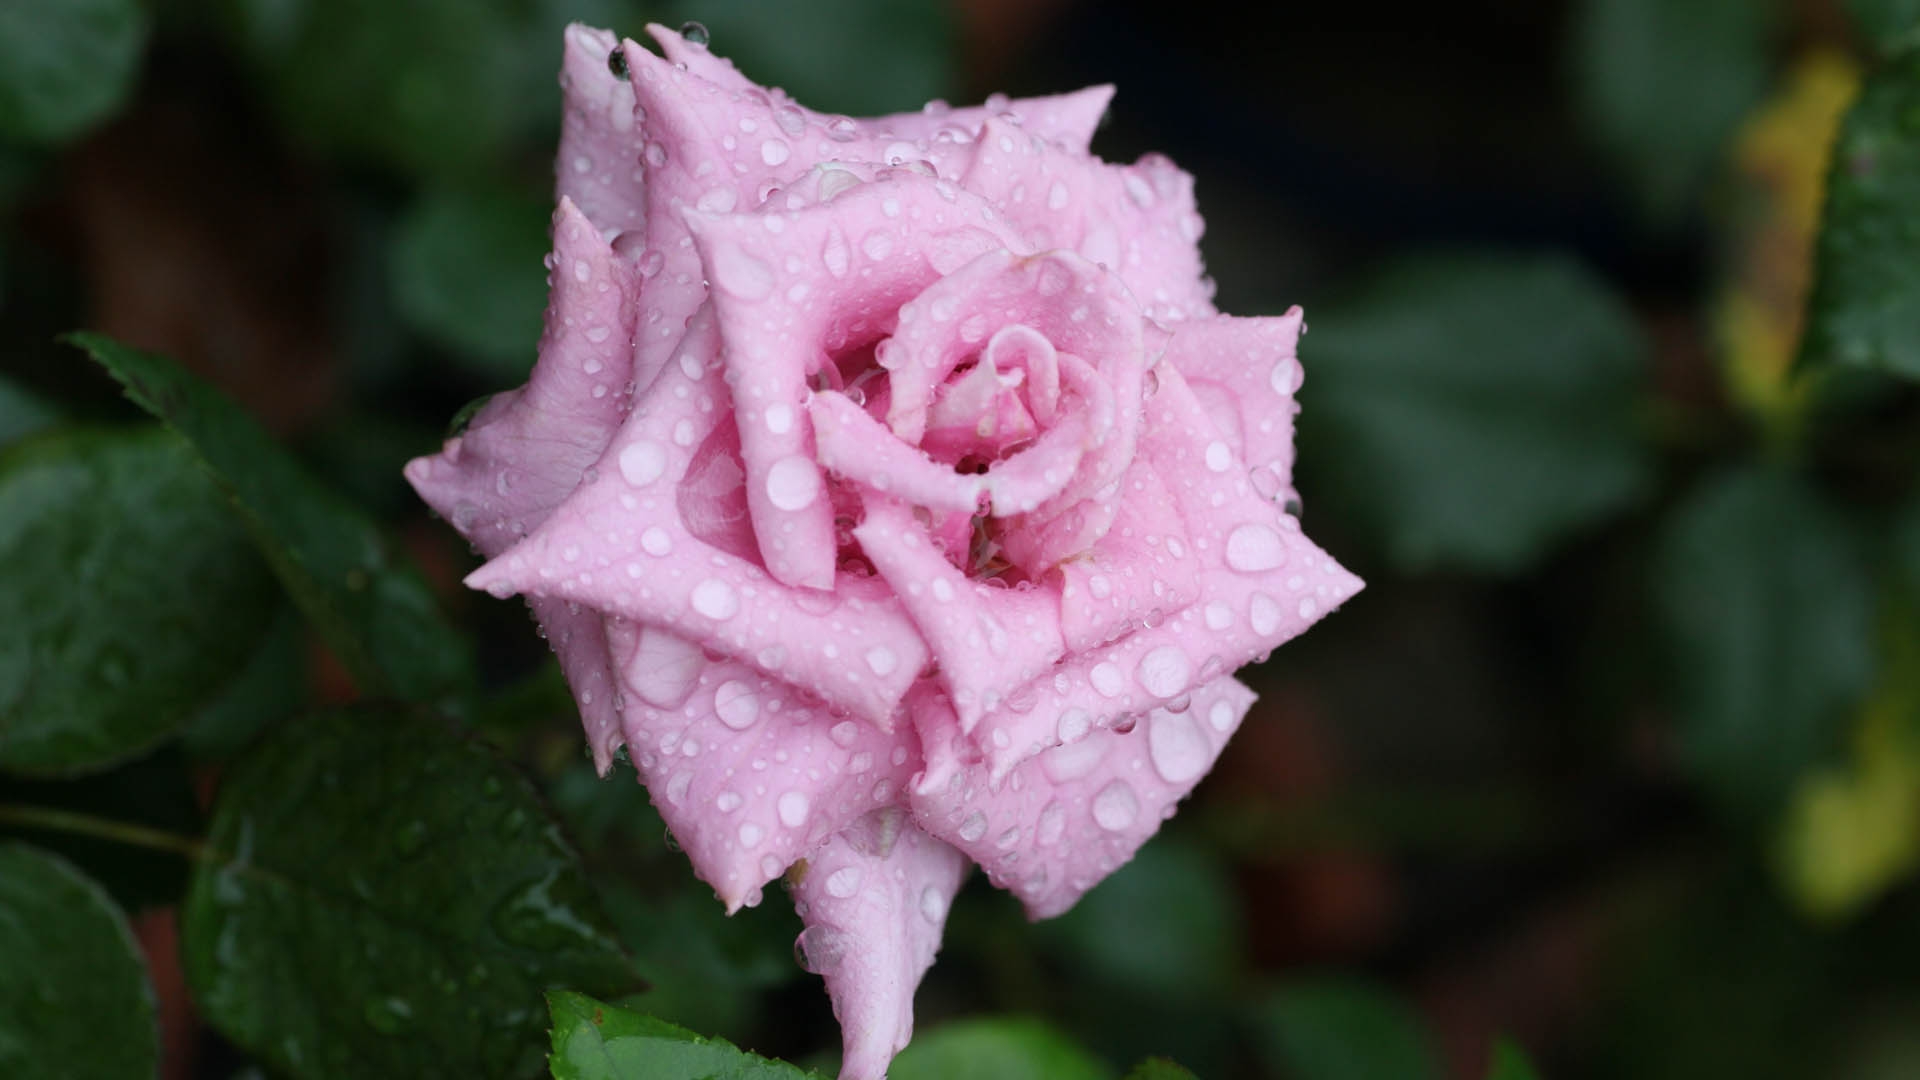 Pink rosebud in the rain